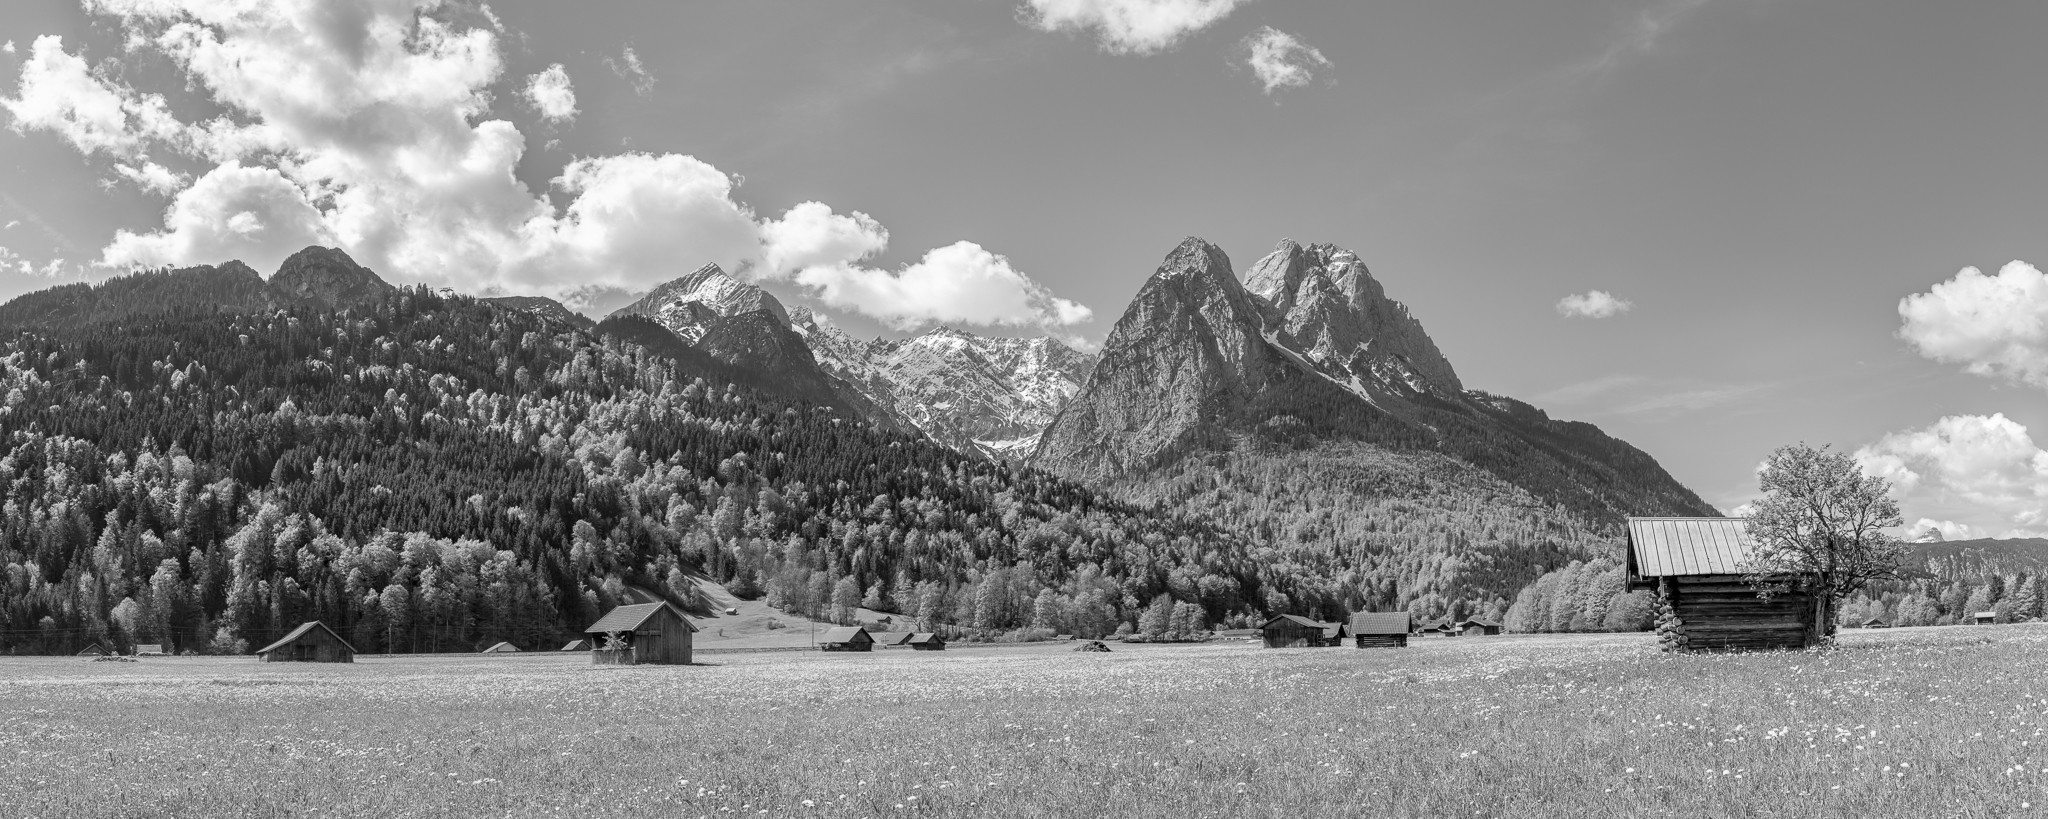 Ofelwiese - Garmisch-Partenkirchen - Alpspitze - schwarz weiß. Frühlingswiese bei Garmisch-Partenkirchen mit idyllischem Stadel. Blick auf Alpspitze, Höllentalspitzen und Waxenstein.